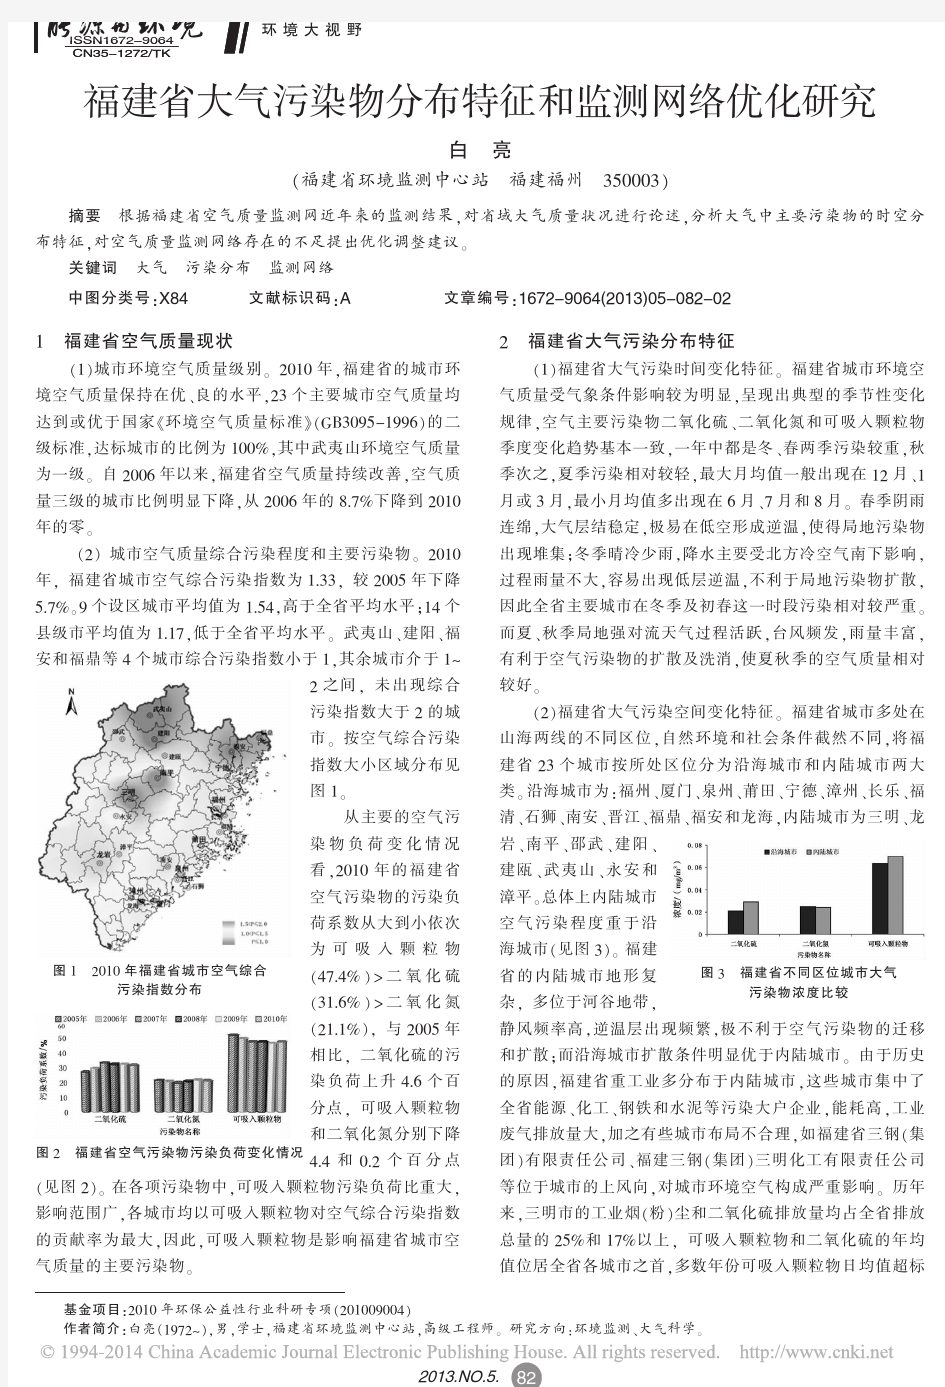 福建省大气污染物分布特征和监测网络优化研究